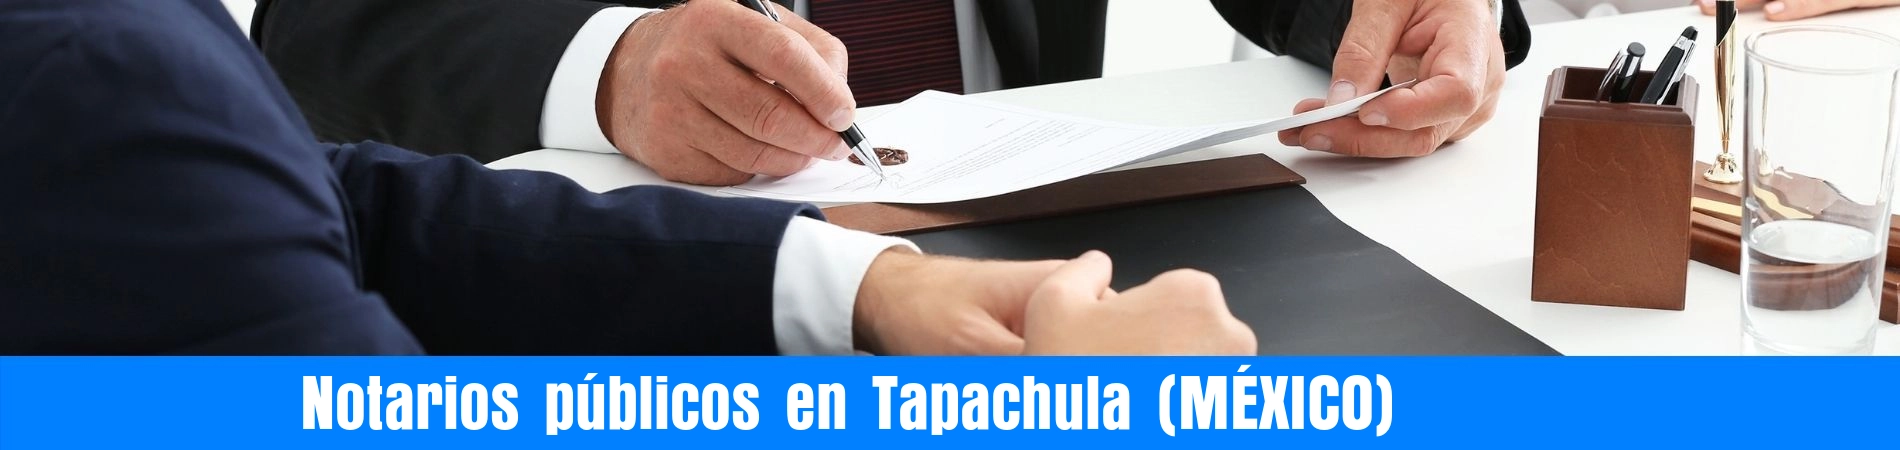 Notarios-públicos-en-Tapachula-mexico